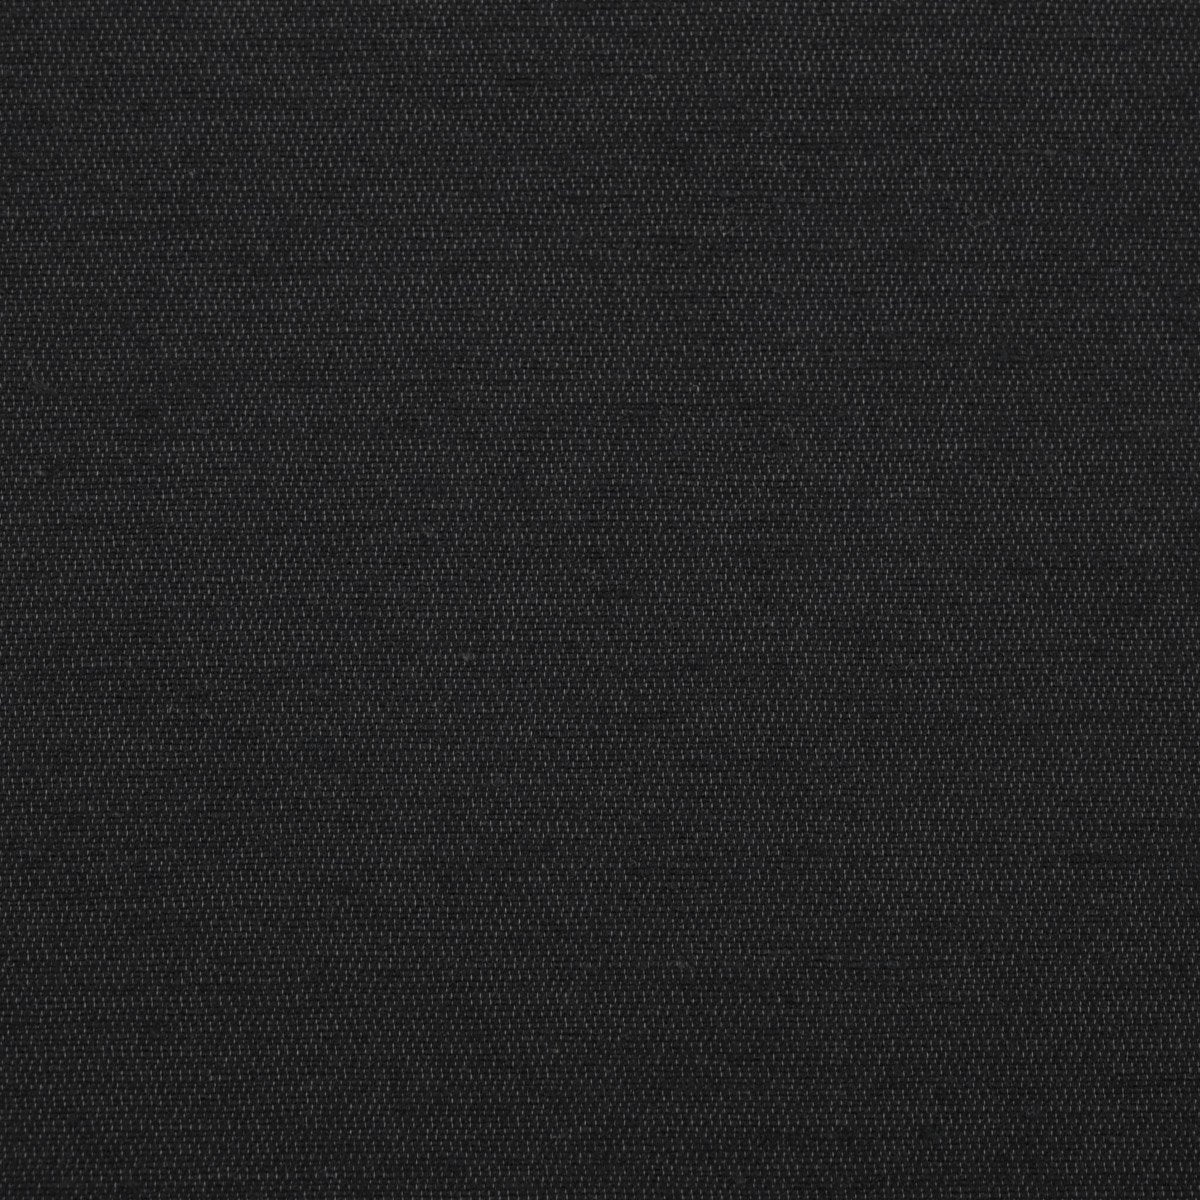 Black Cotton Canvas 96513